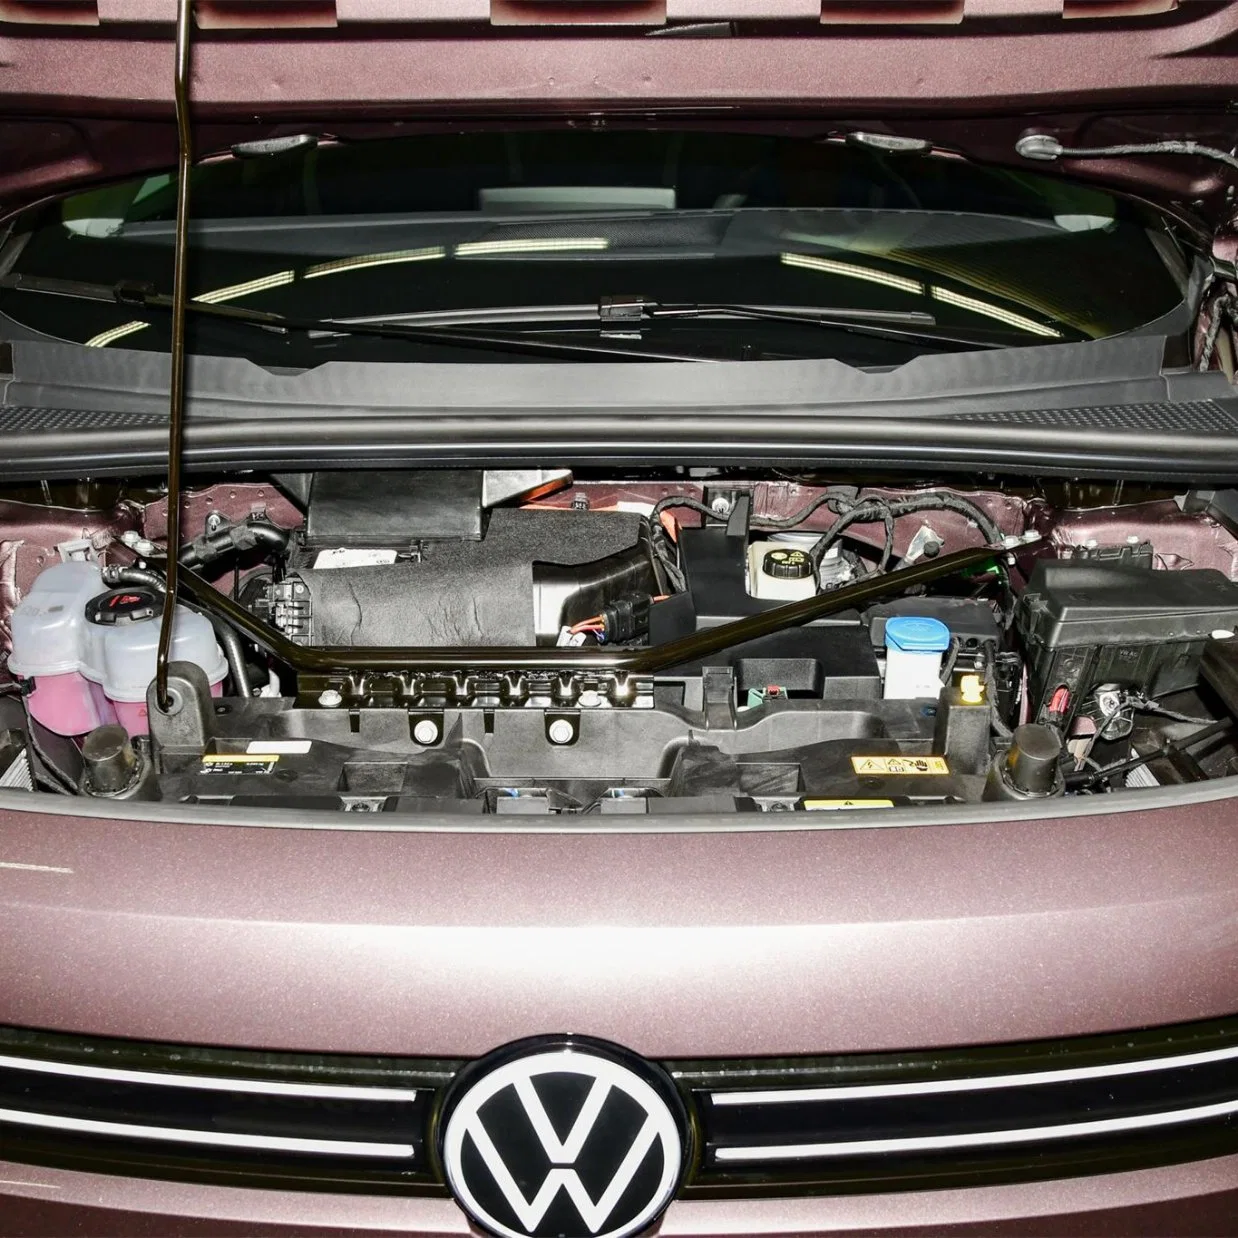 SUV 2wdcar 4wdcar Voiture d'occasion Volkswagen id6crozz Véhicules à énergie nouvelle Voitures électriques Auto électrique Vwid6pure+ Lite PRO ID6prime Voiture neuve Voiture d'occasion